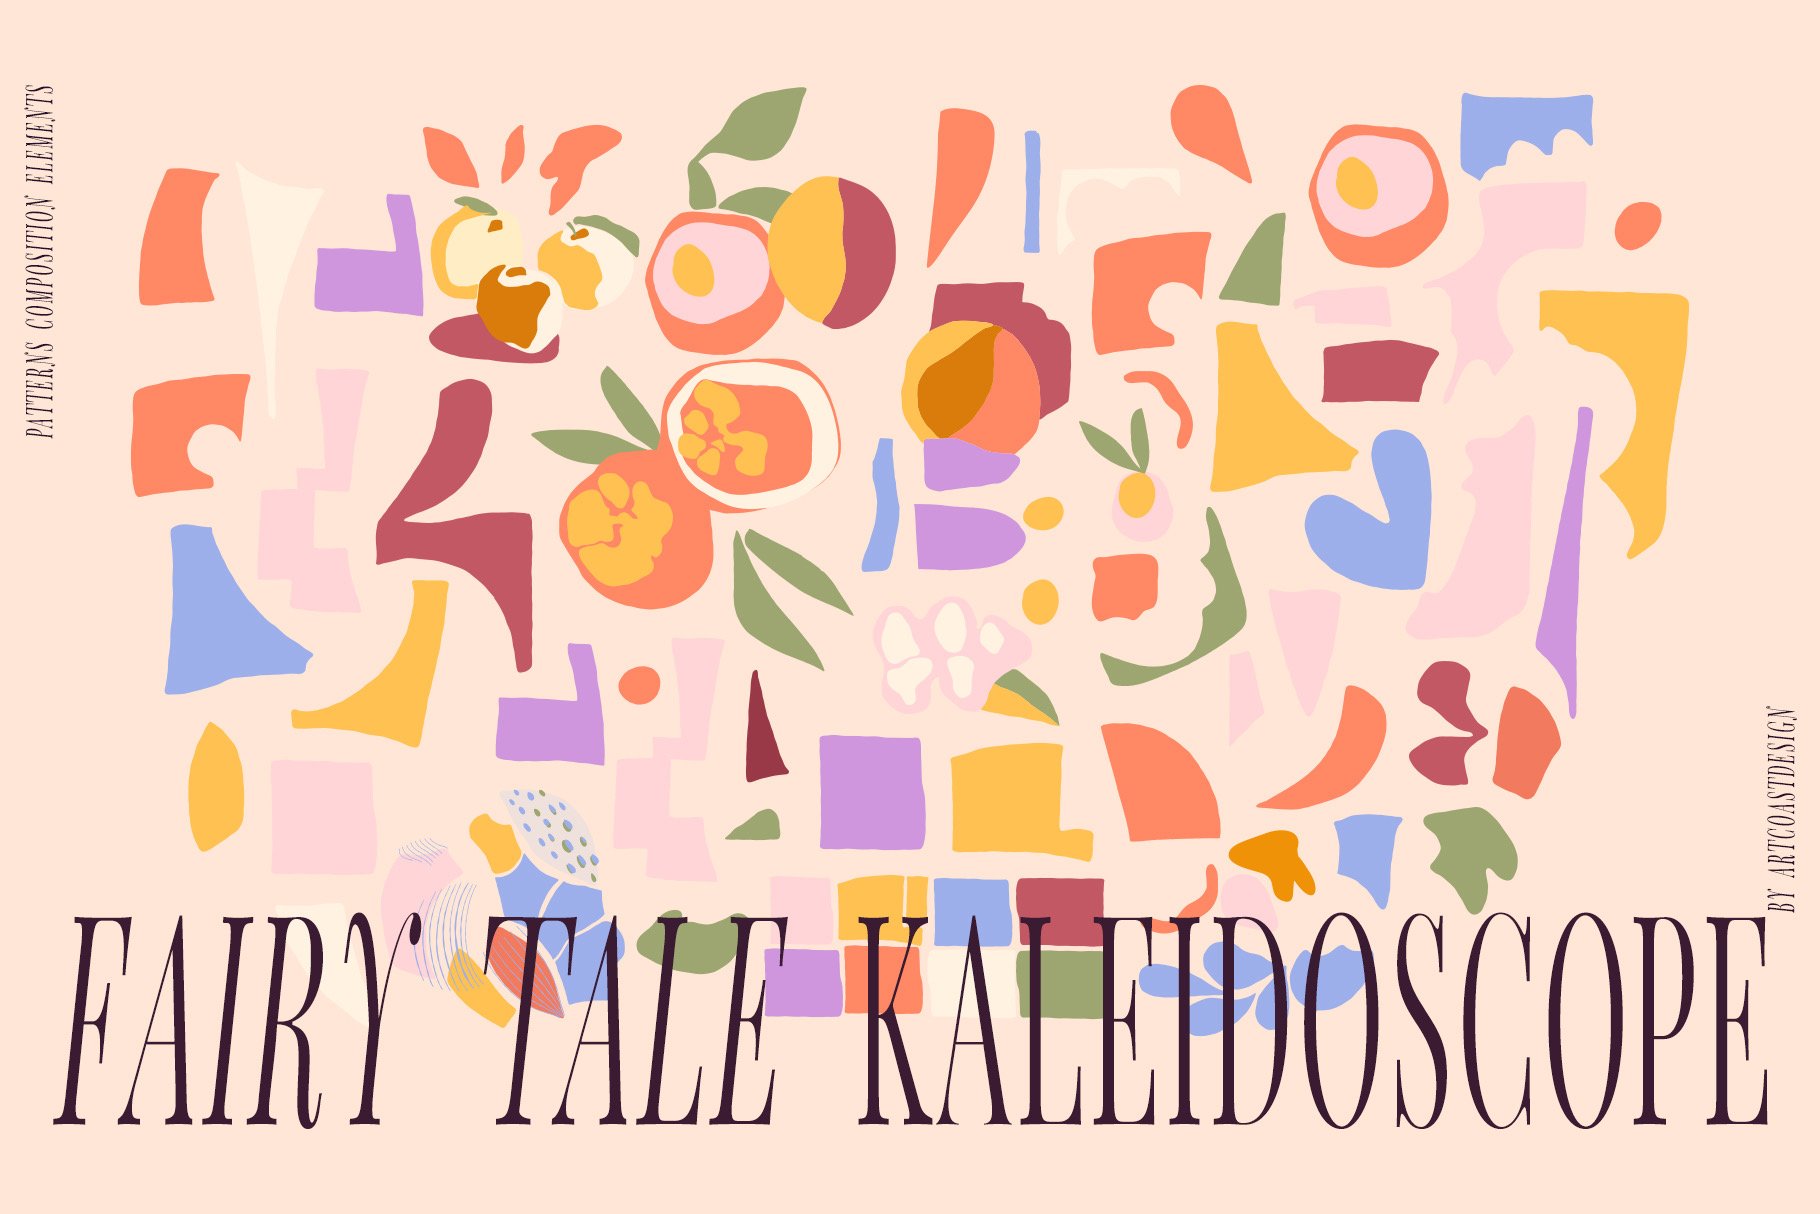 Fairy-Tale-Kaleidoscope-Vector-Art-Patterns-11.jpeg